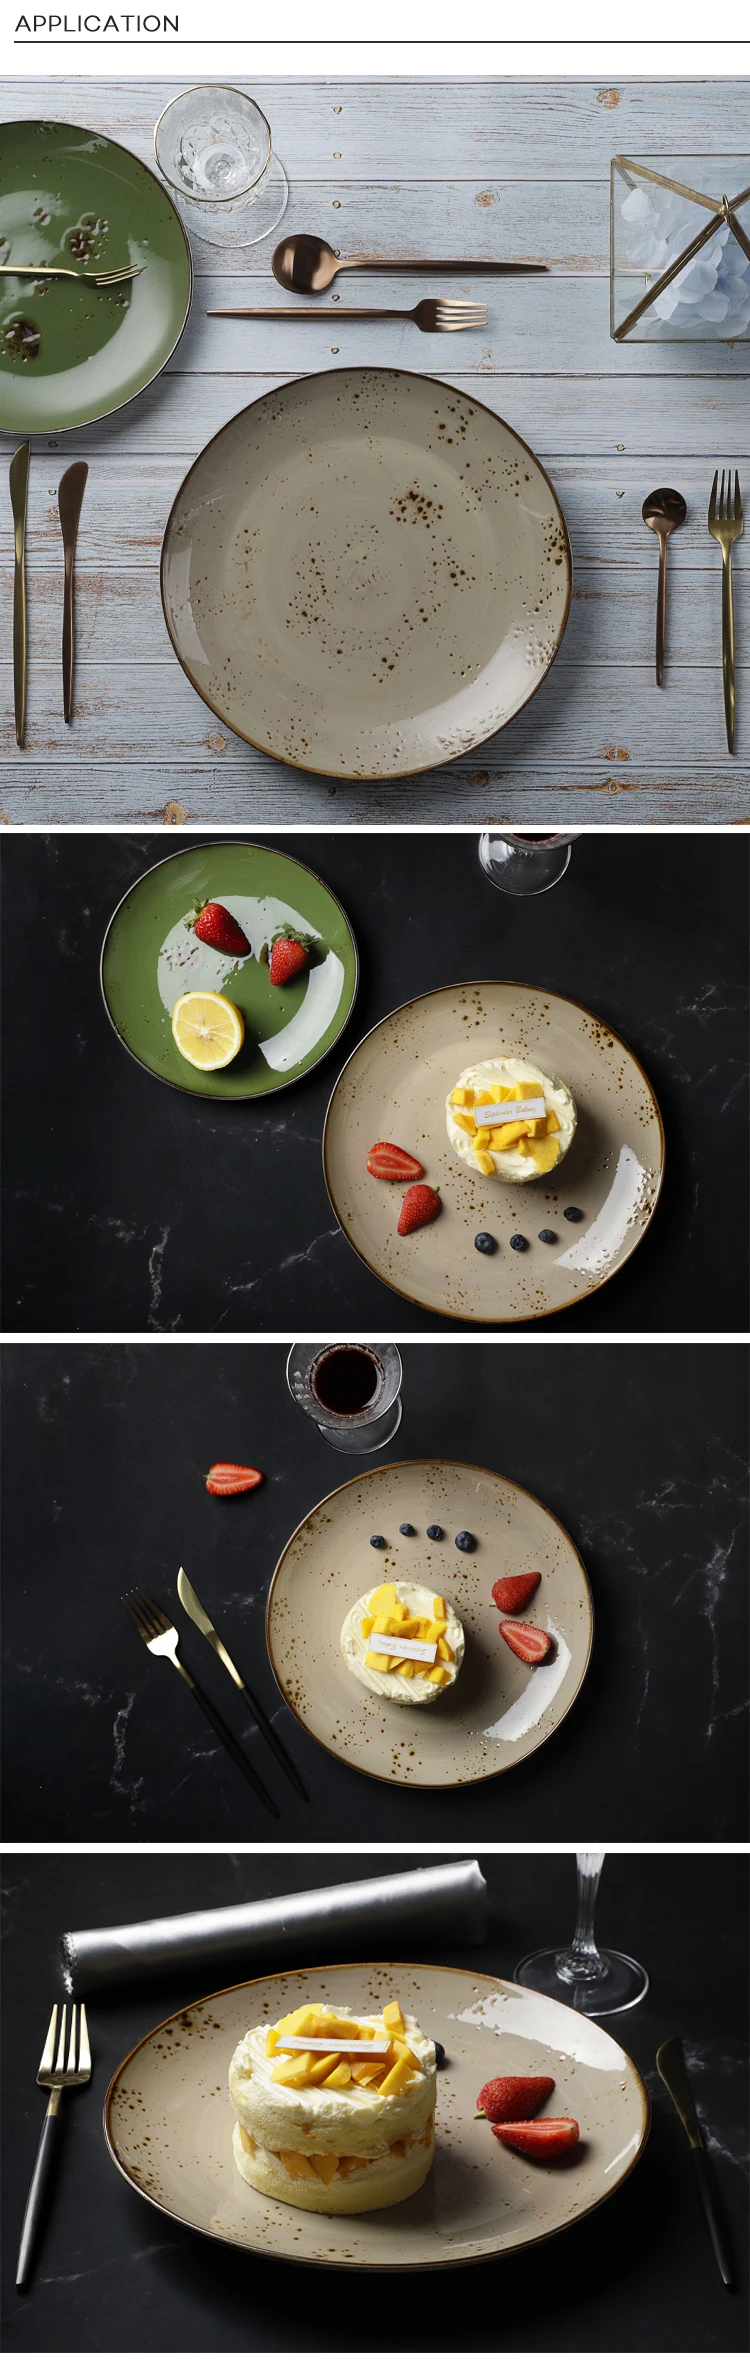 28ceramics Rustic Guangzhou Tableware Appetizer Plates, 28ceramics Rustic Ceramic Tableware 8.25/10.5 Inch Dinnerware Plate~